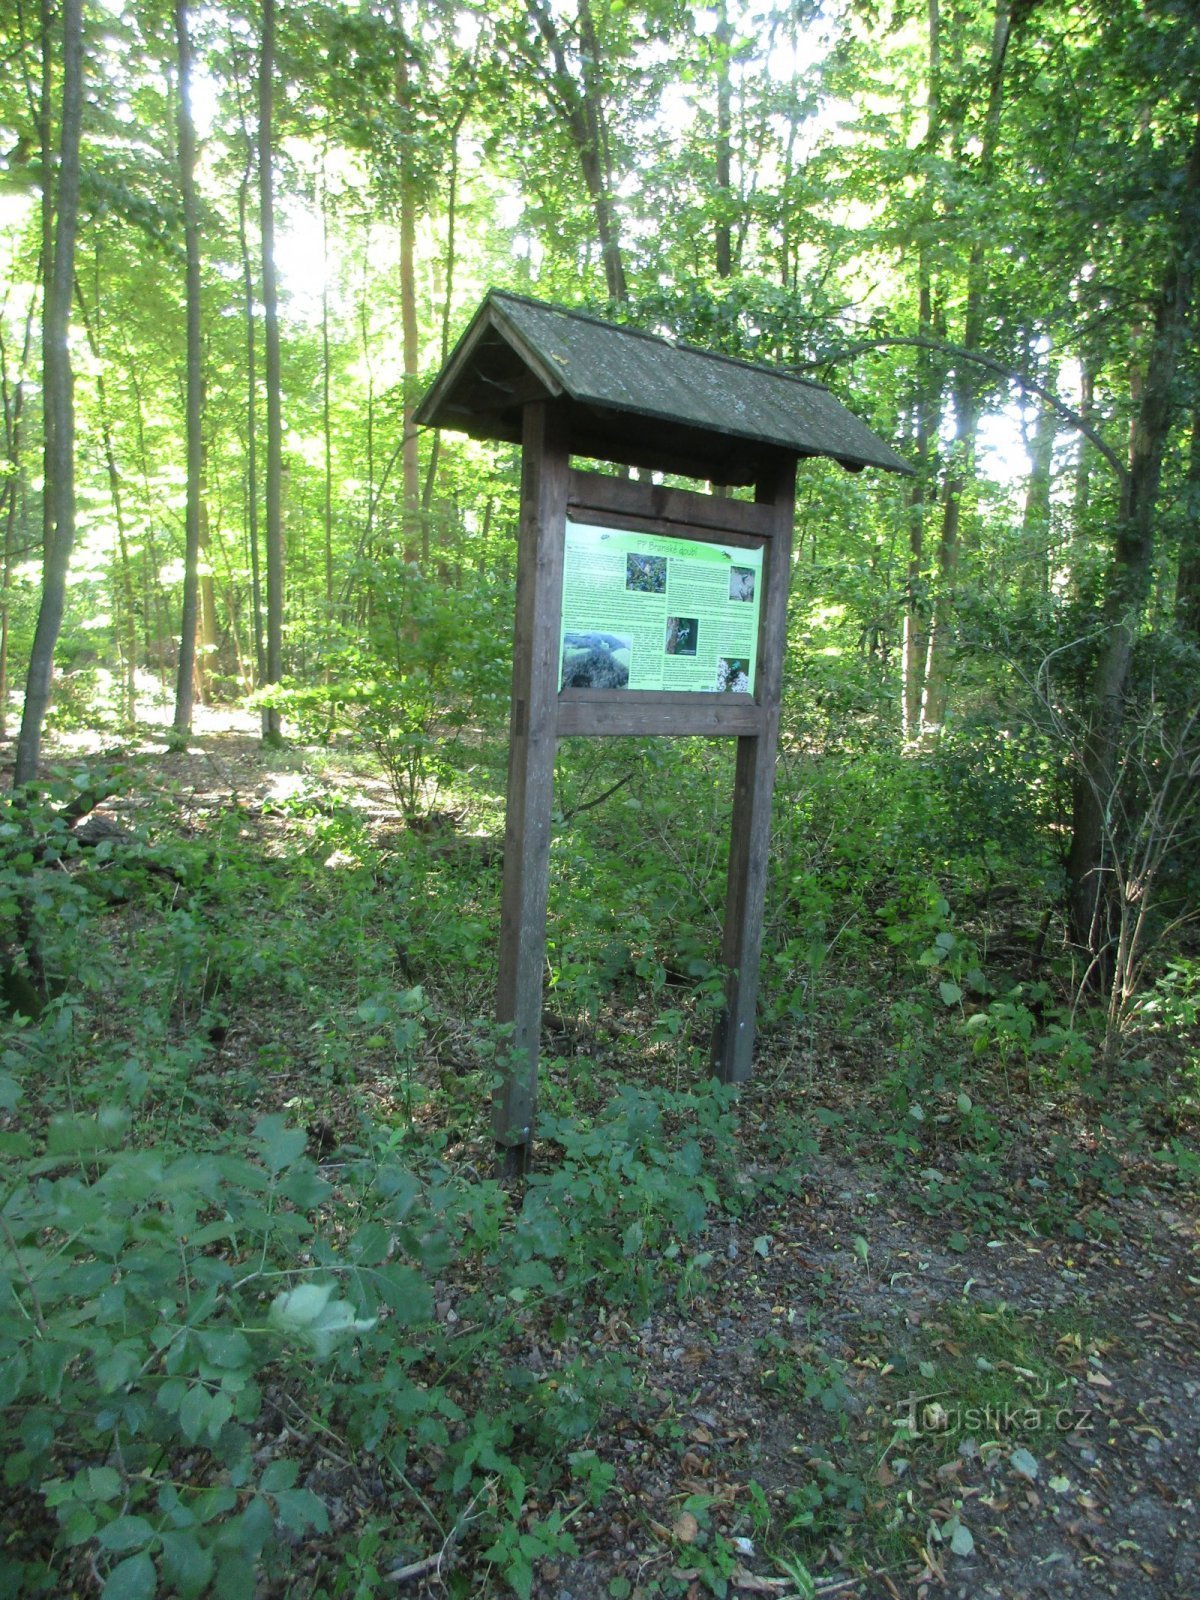 πίνακας πληροφοριών για τη διαδρομή της πράσινης τουριστικής πινακίδας προς Branná και Kojákovice